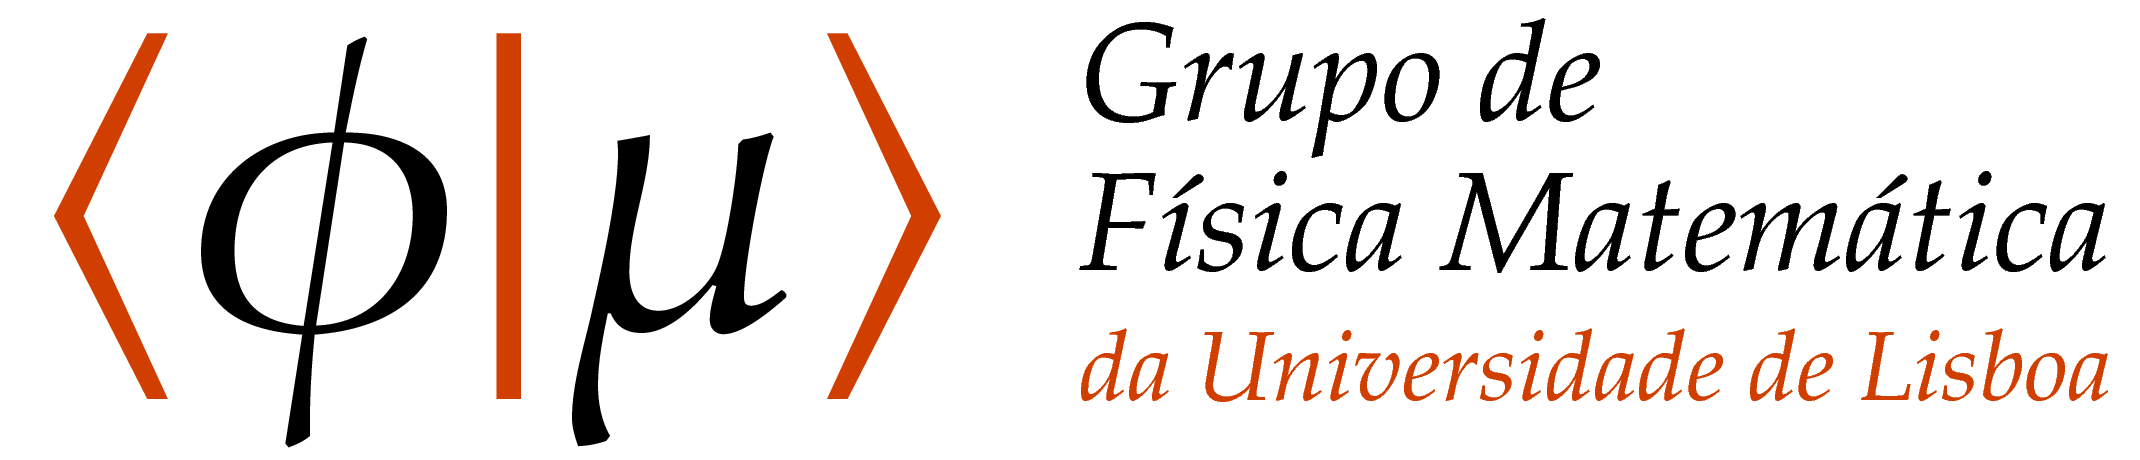 Logotipo do GFM: versão raster